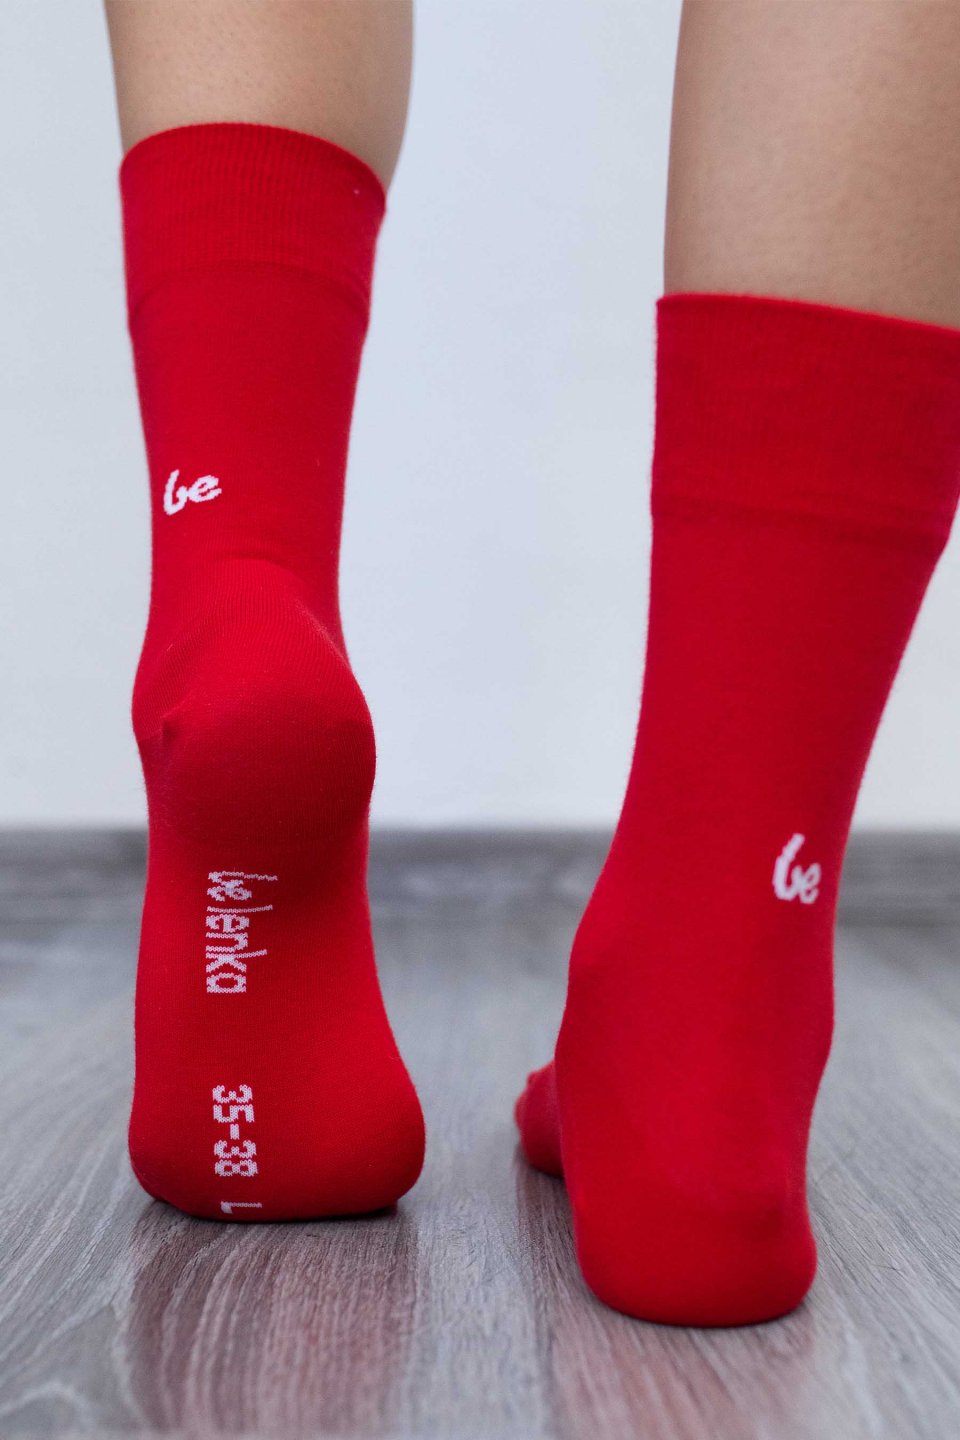 Barefoot ponožky - Rudé